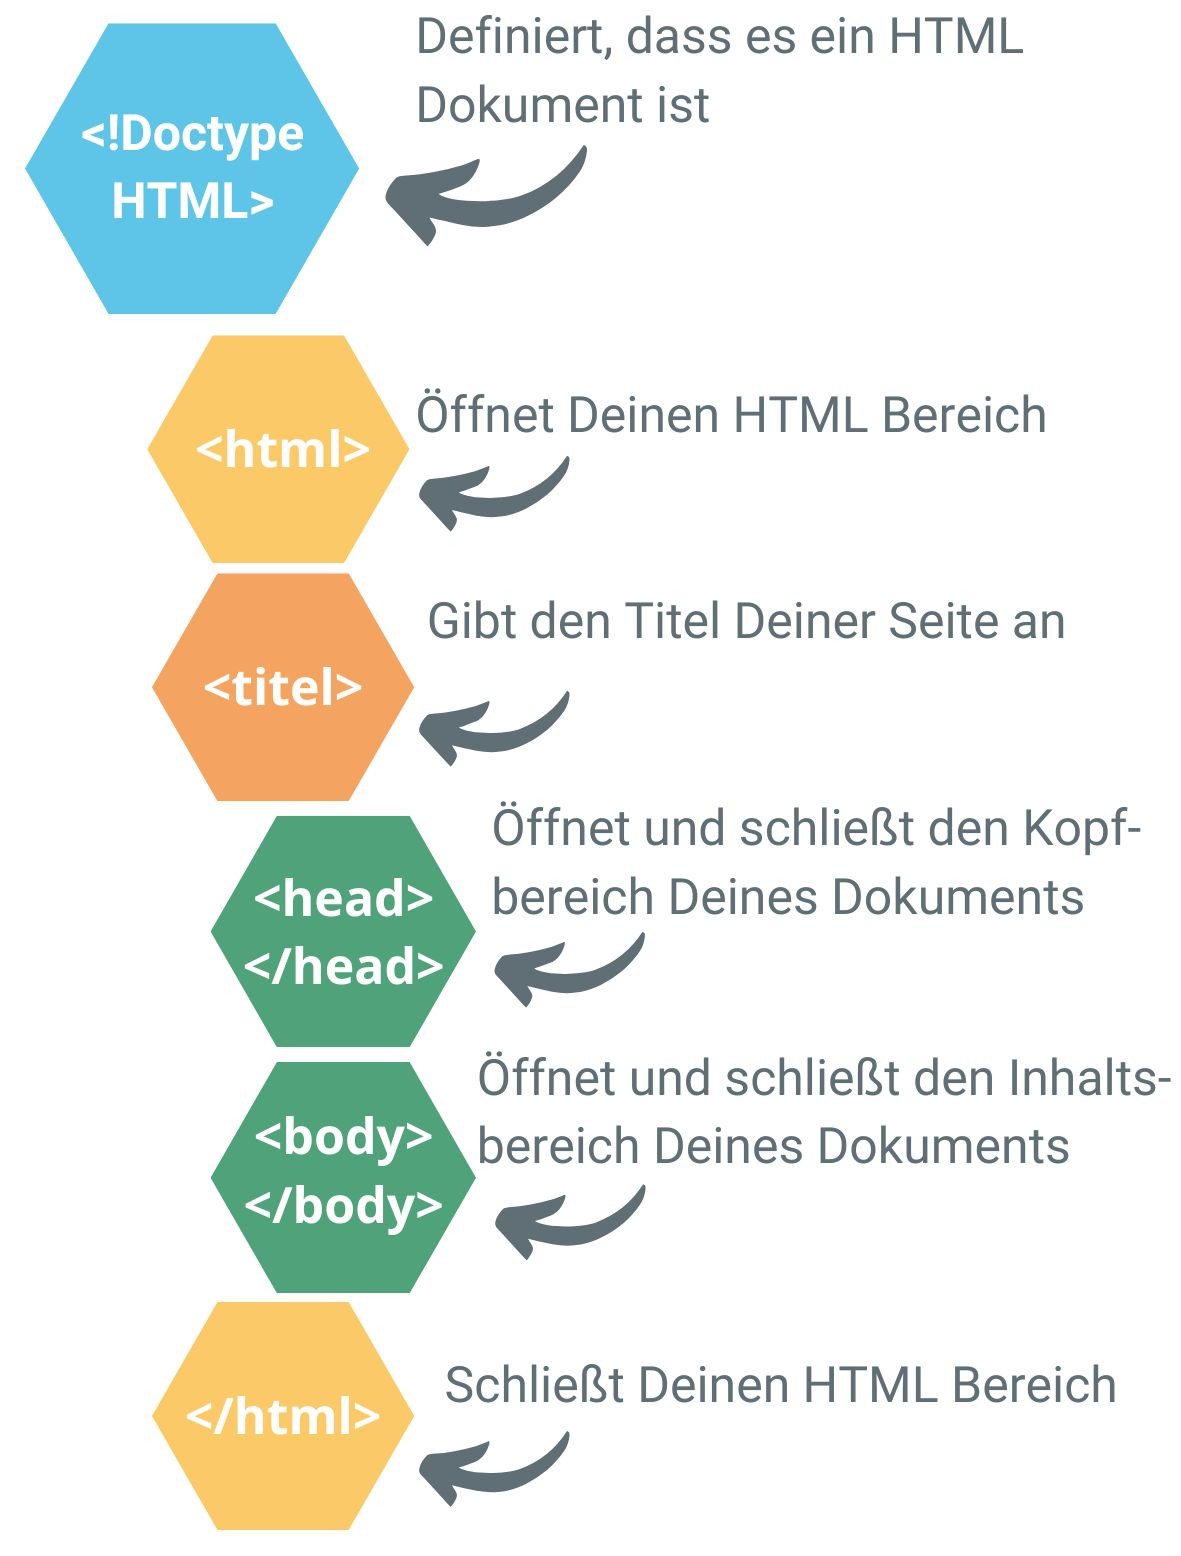 Die Grafik zeigt den Aufbau eines HTML-Dokuments, beginnend mit dem HTML-Bereich, anschließend dem Titel, dem Head-Bereich und dem Body-Bereich.